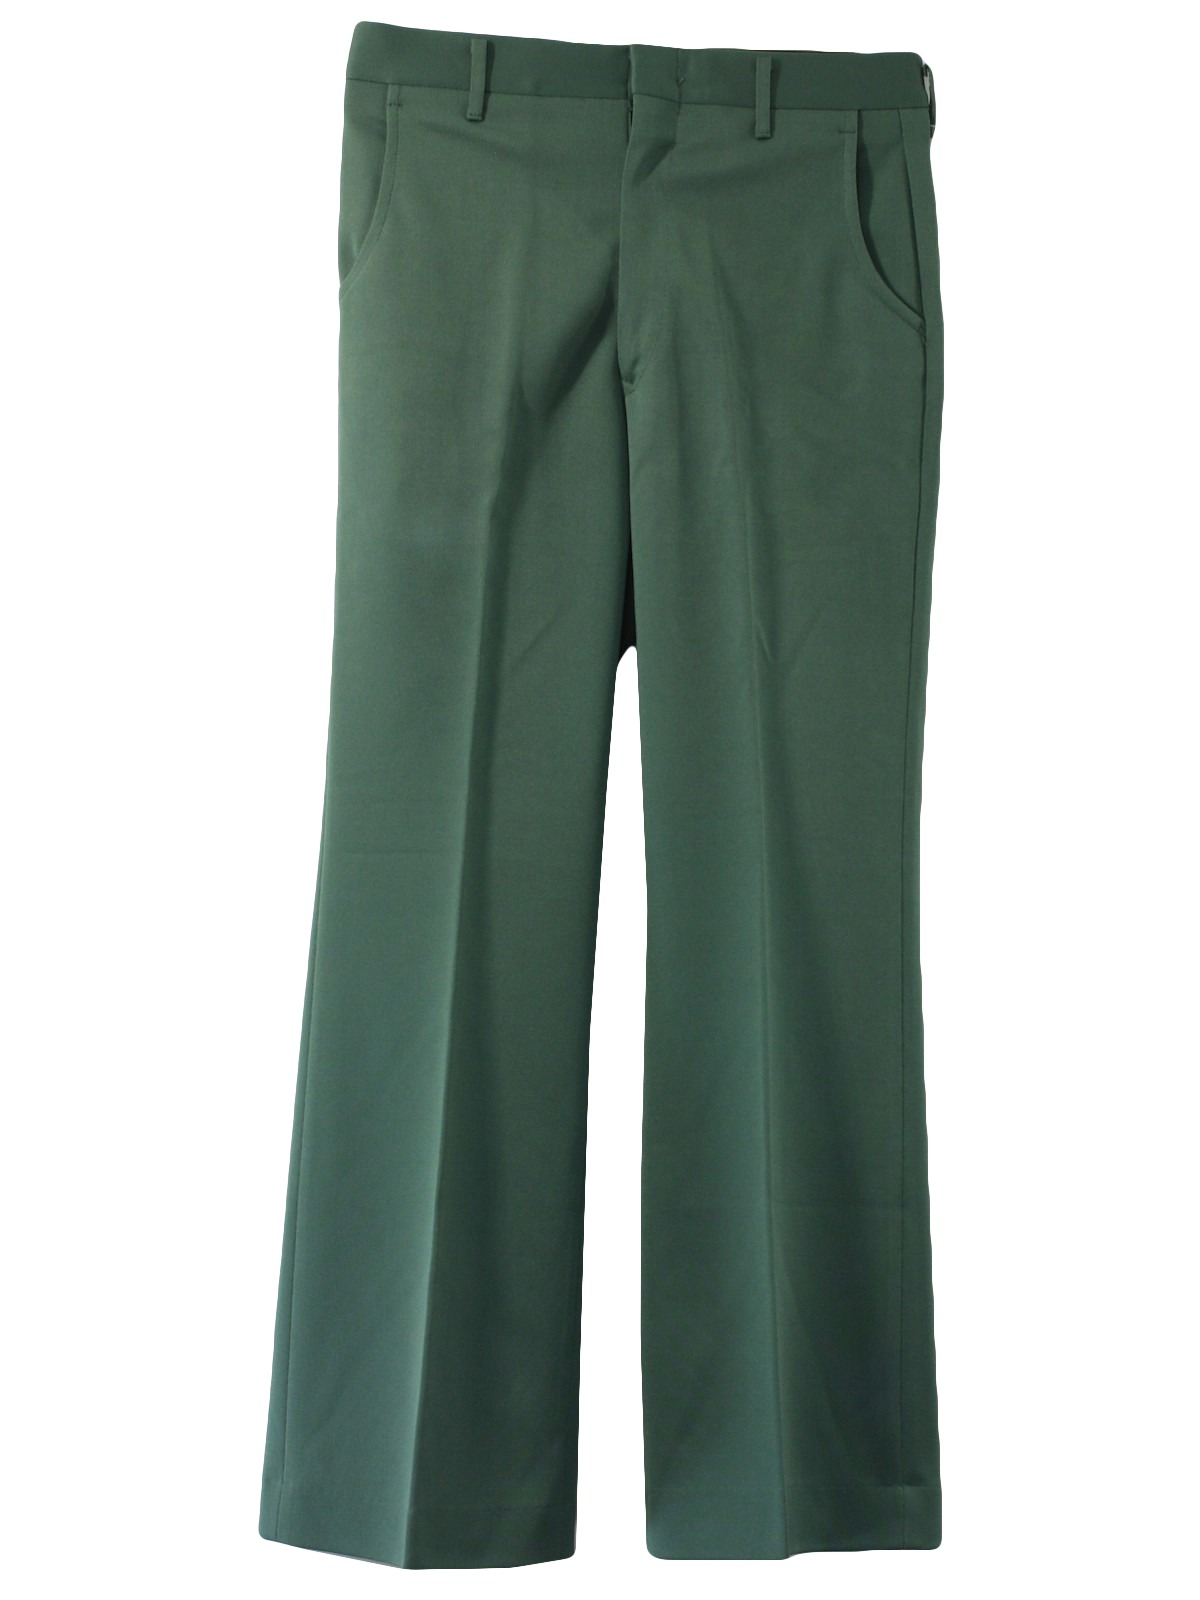 Seventies Vintage Bellbottom Pants: 70s -European Cut- Mens dusty green ...